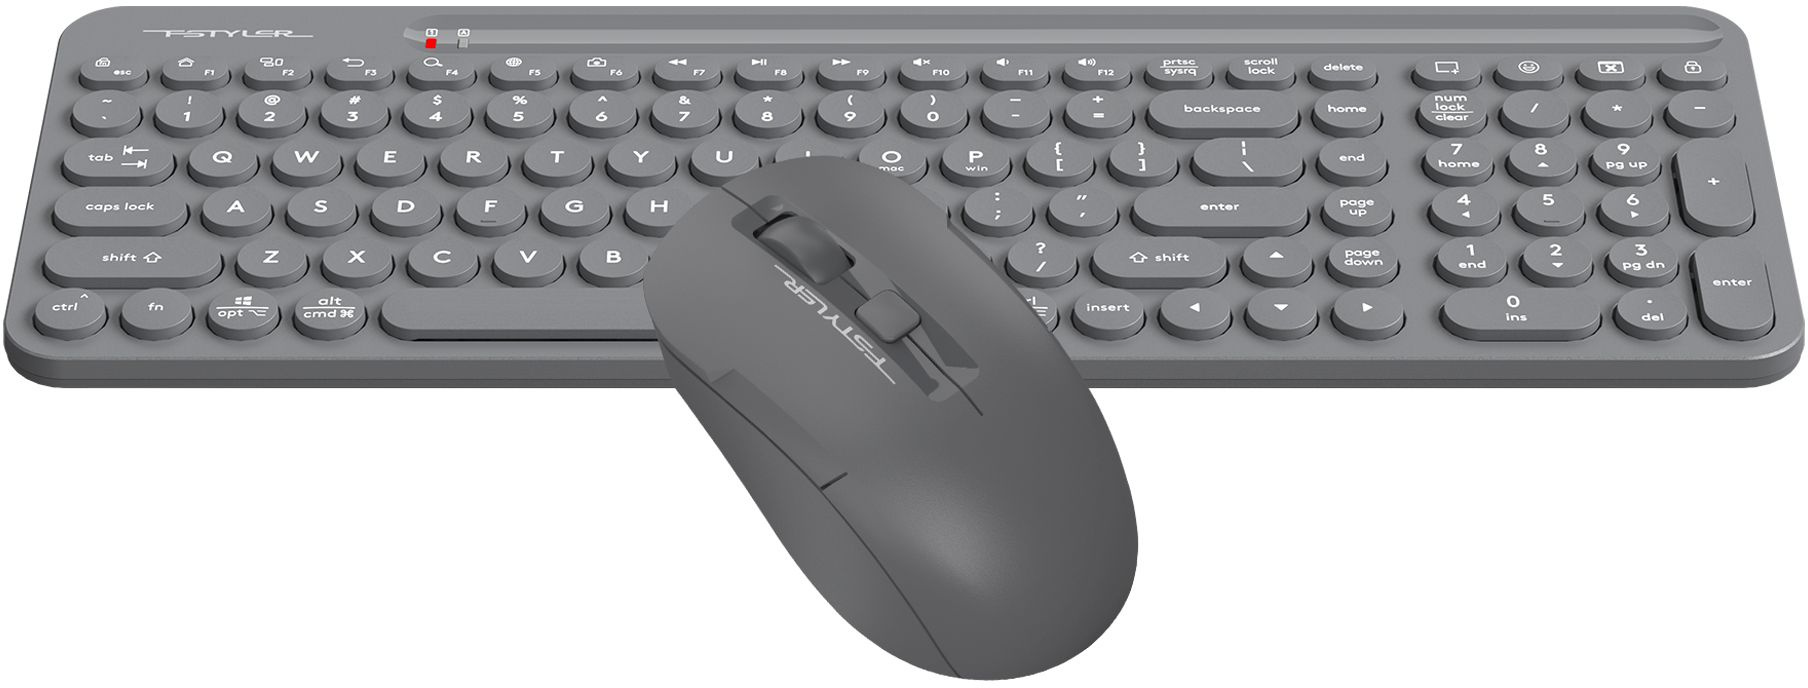 کیبورد و ماوس بیسیم ایفورتک مدل Wireless Keyboard & Mouse A4tech FG3300 Air